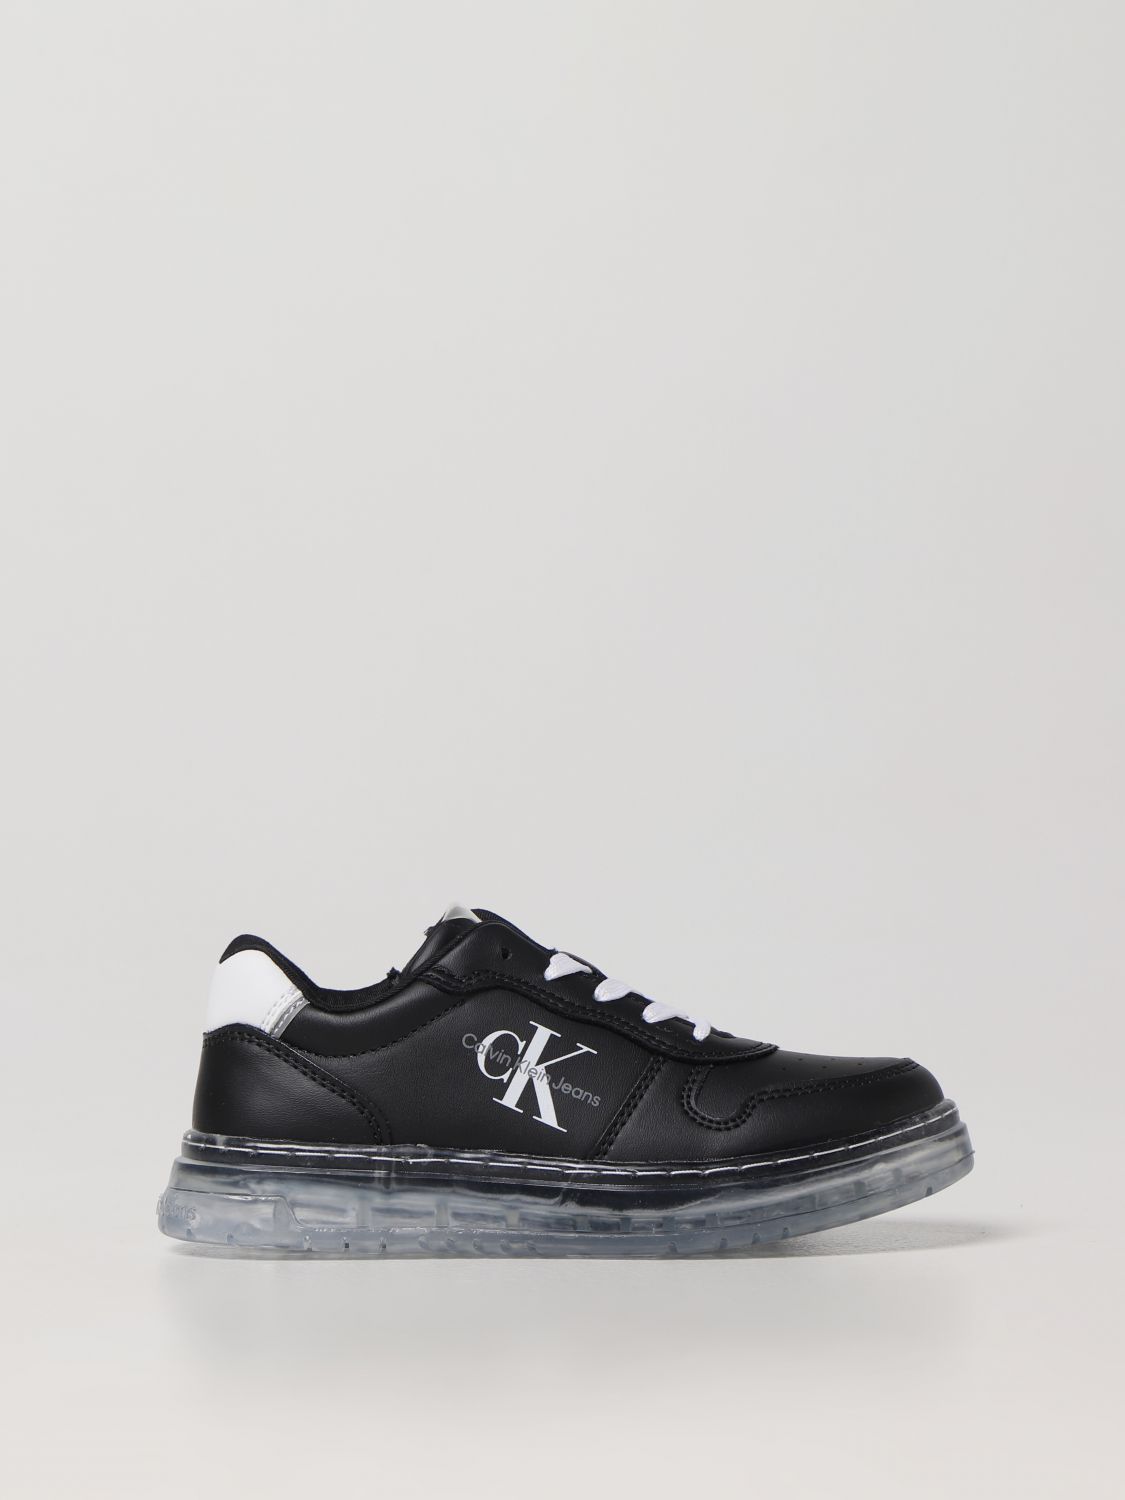 Calvin Klein Kids' Schuhe  Kinder Farbe Schwarz In Black